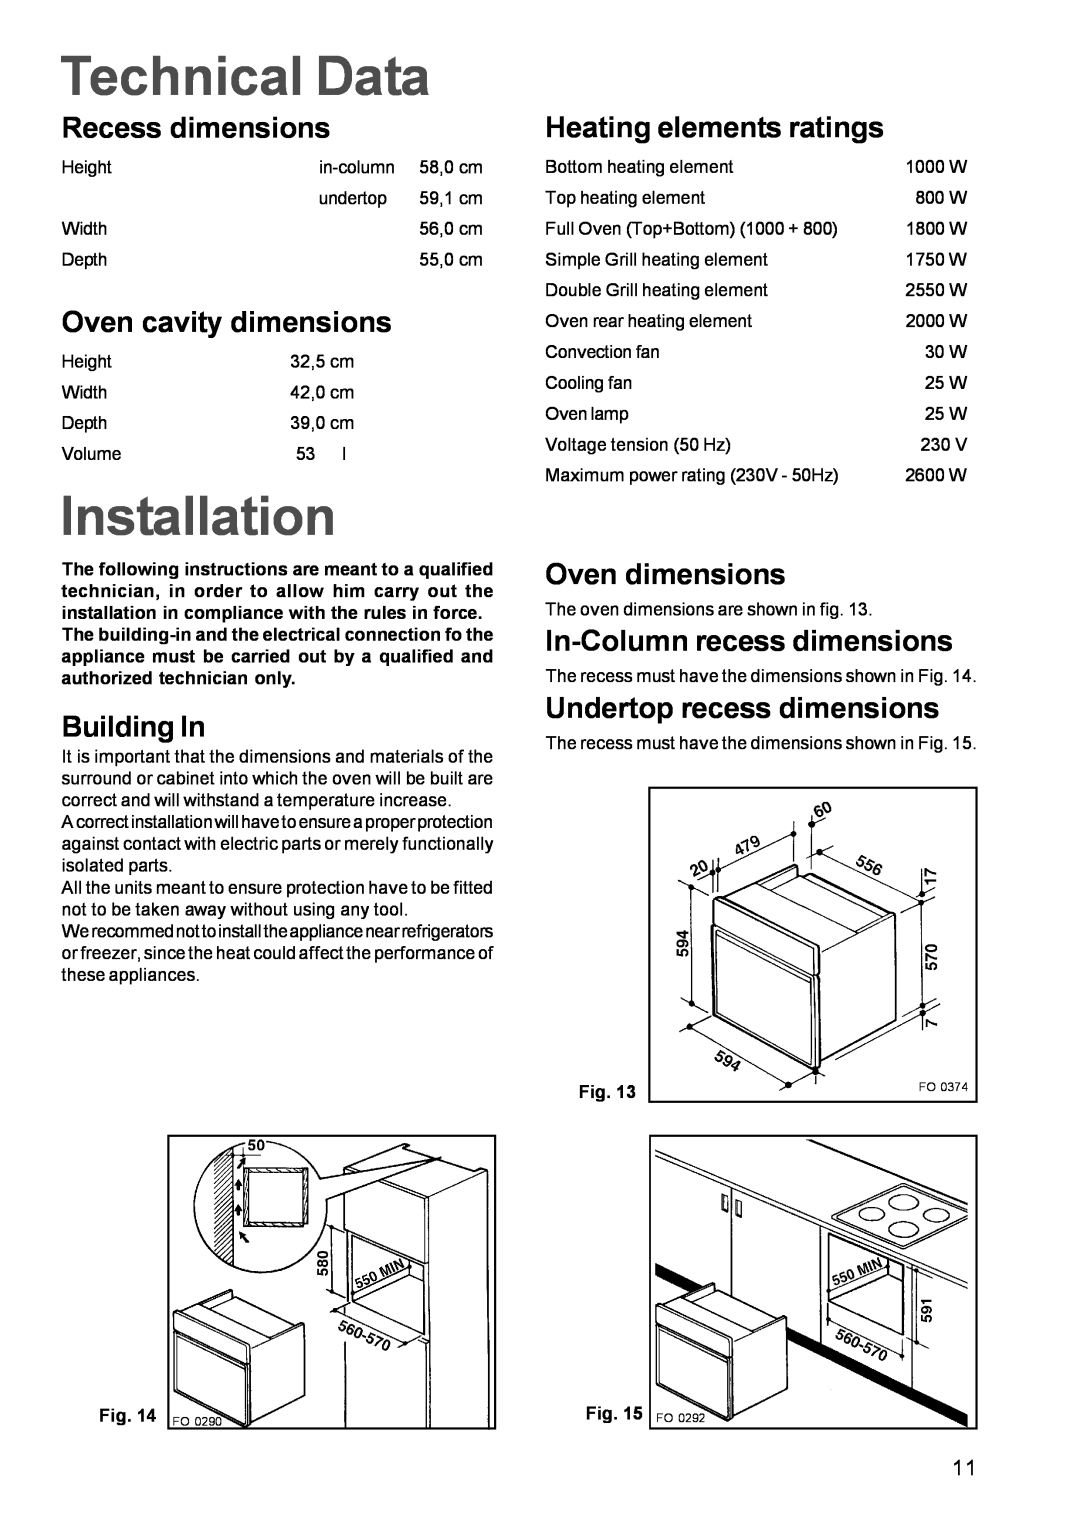 Zanussi ZBF 859 Technical Data, Installation, Recess dimensions, Oven cavity dimensions, Building In, Oven dimensions 